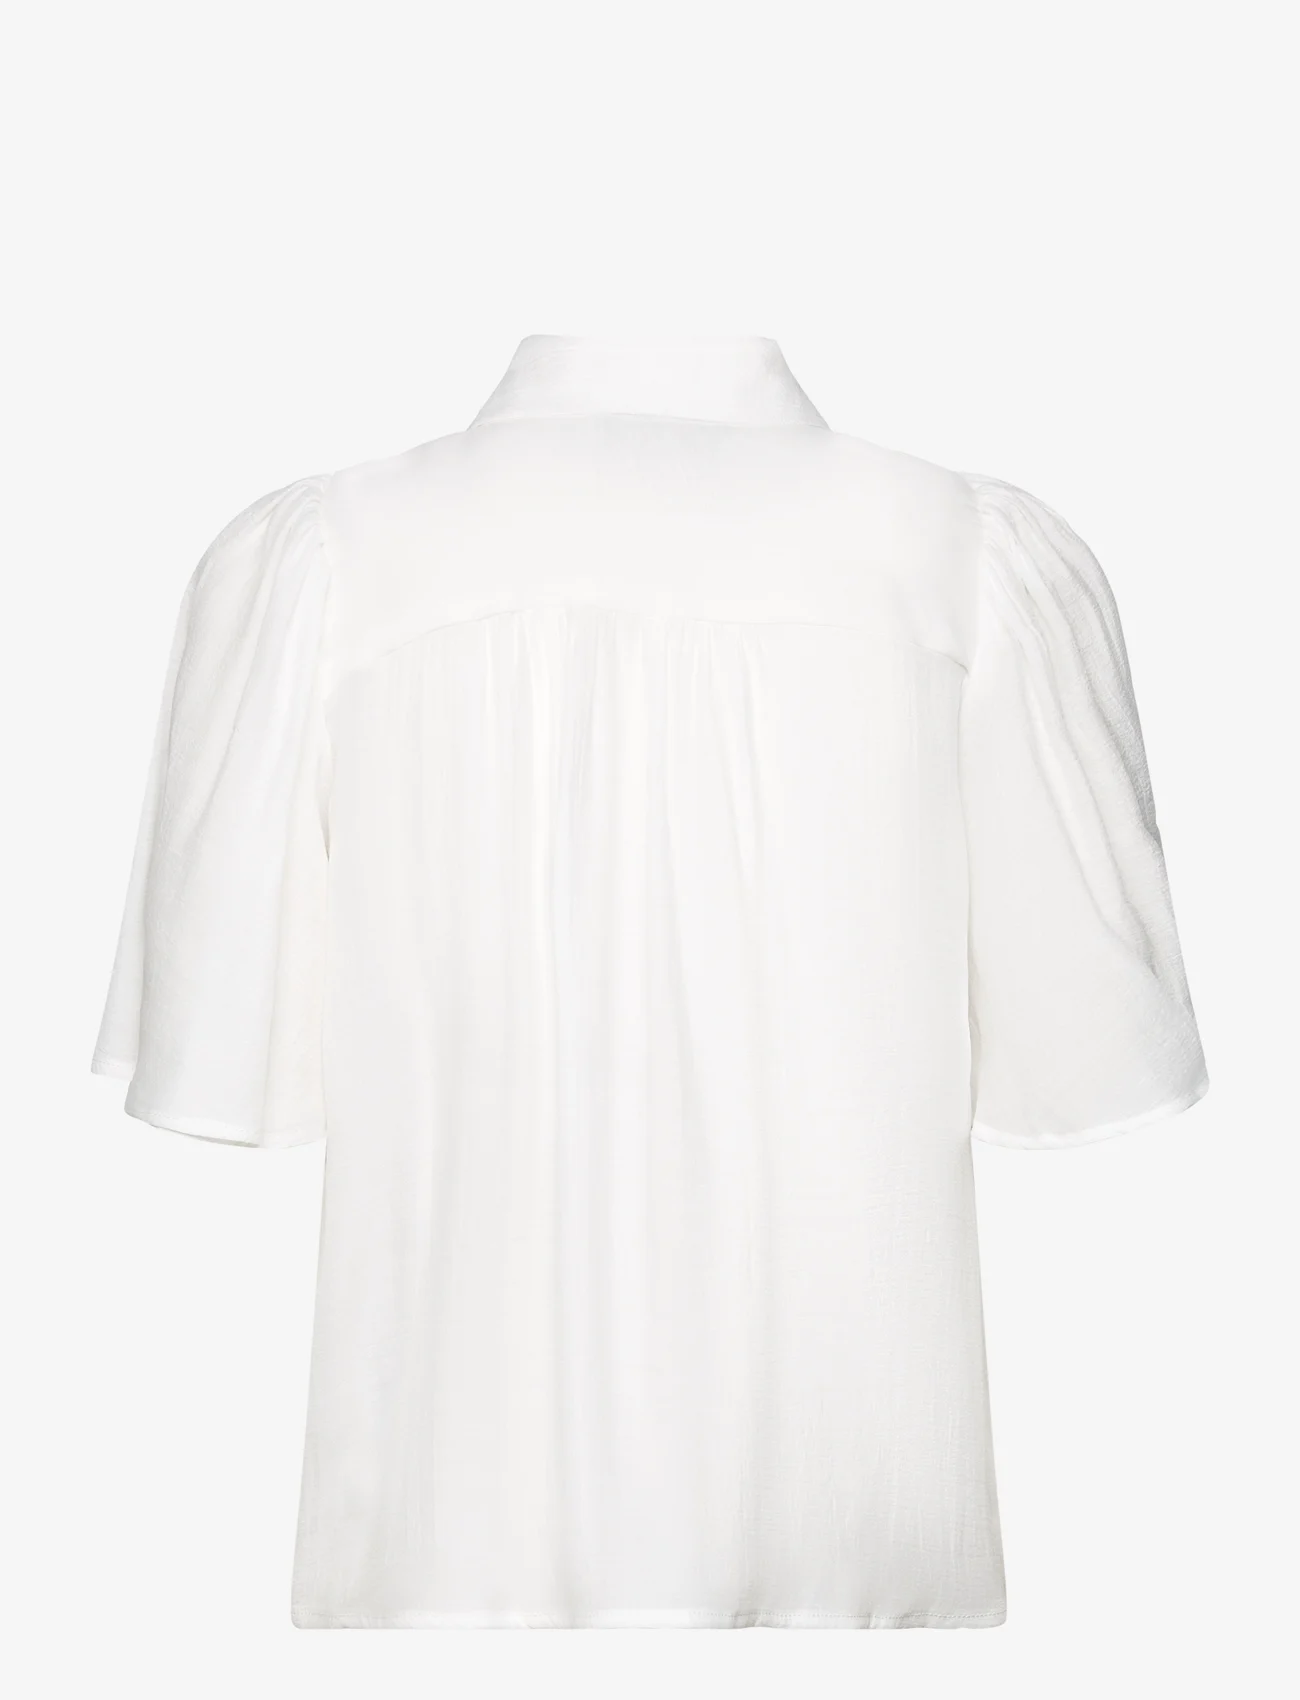 Minus - MSTalmie Short Sleeve Shirt - kortärmade skjortor - cloud dancer - 1